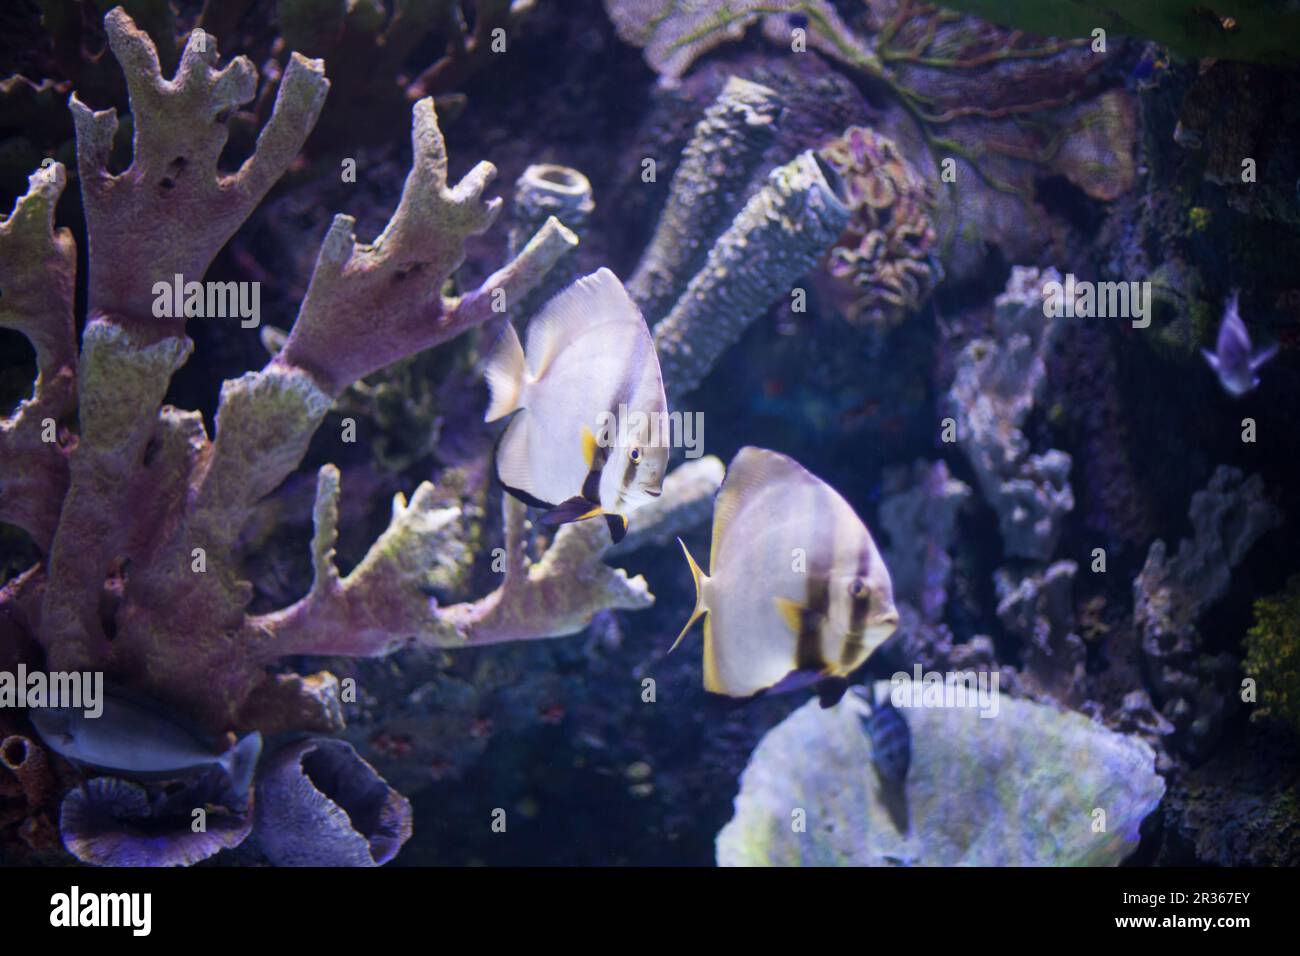 Tropical sea fish in aquarium Stock Photo